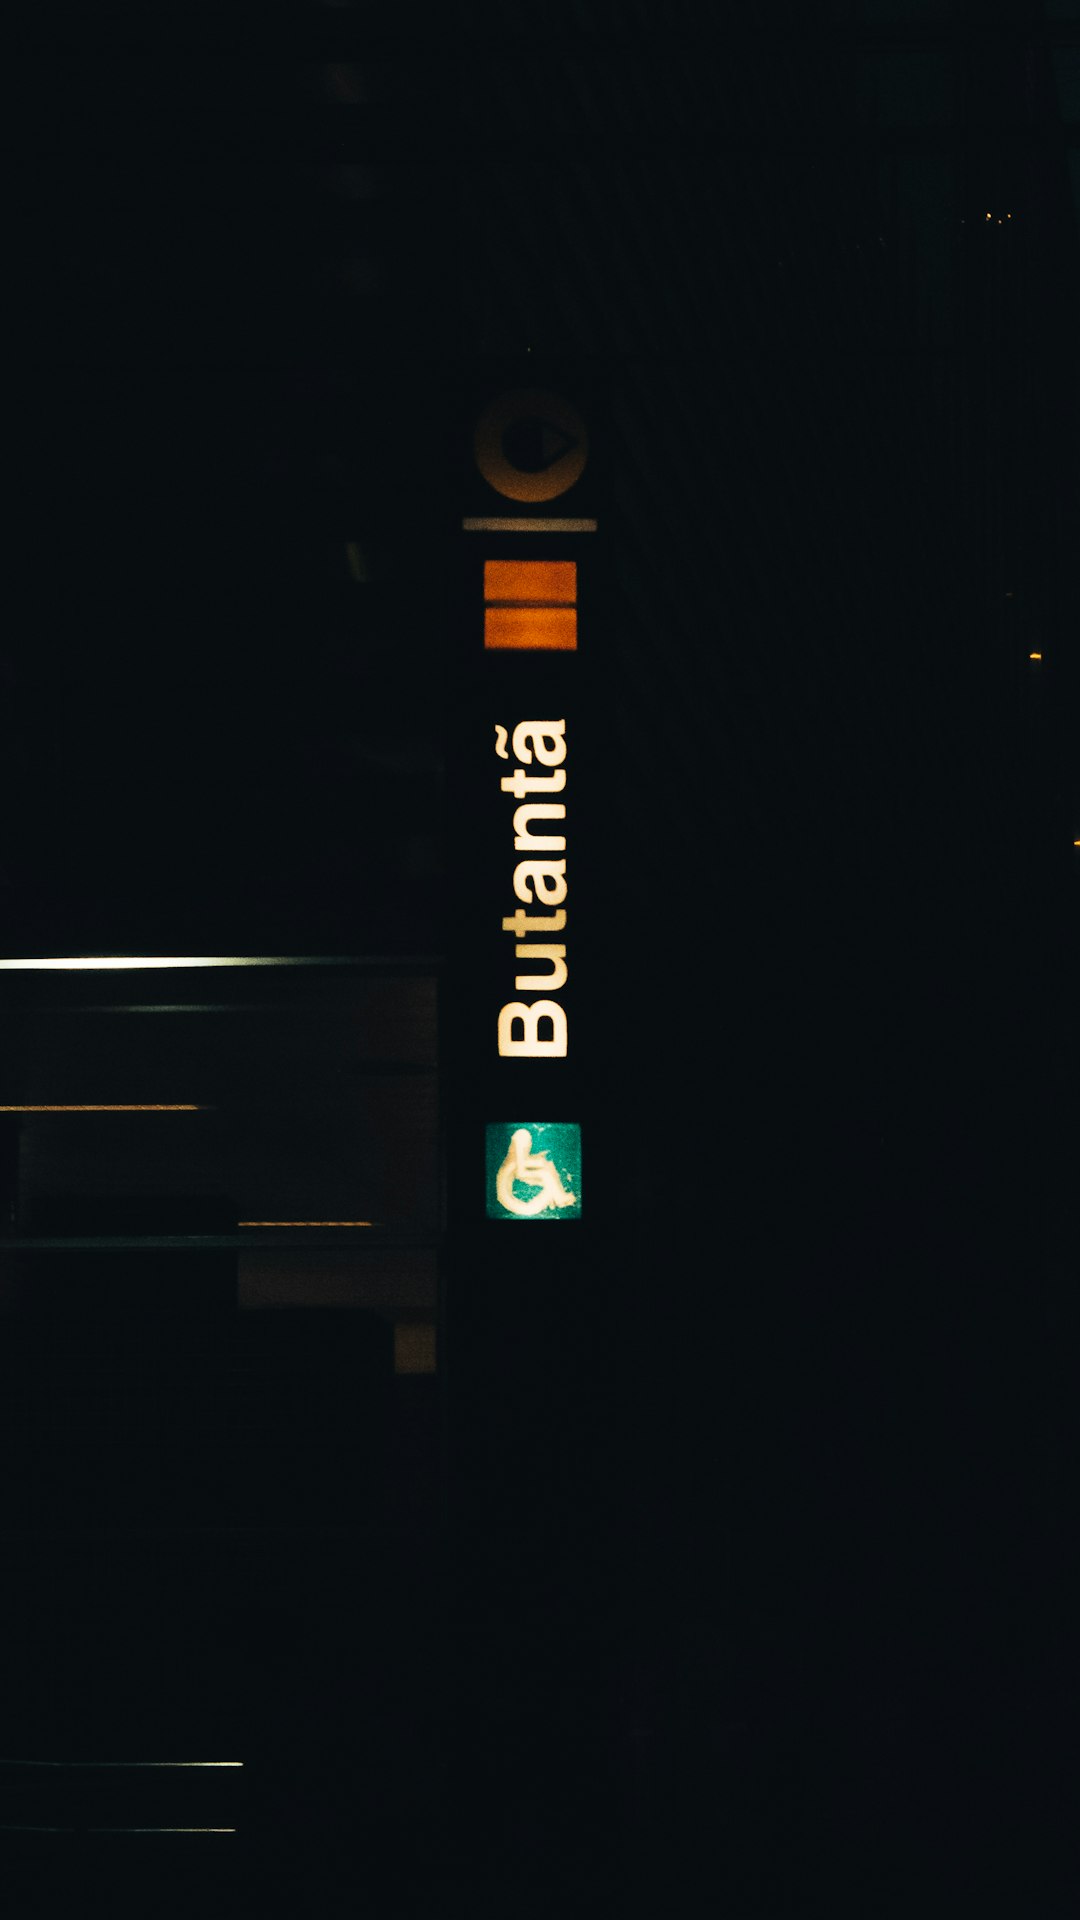 turned on LED Butanta signage